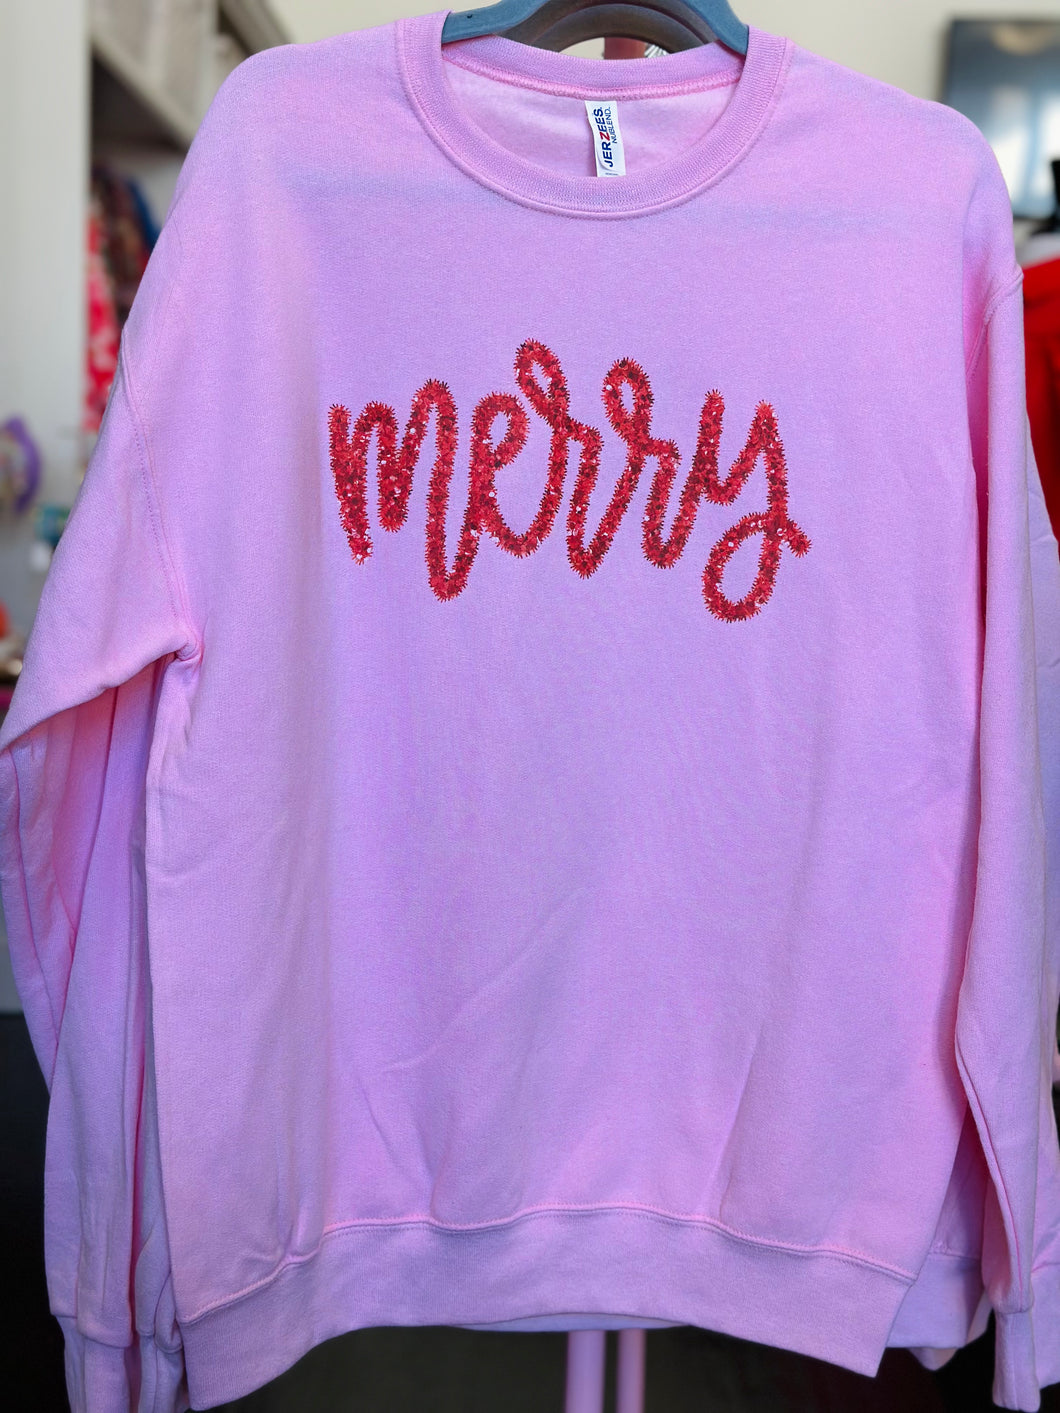 The Pink Merry Sweatshirt Top